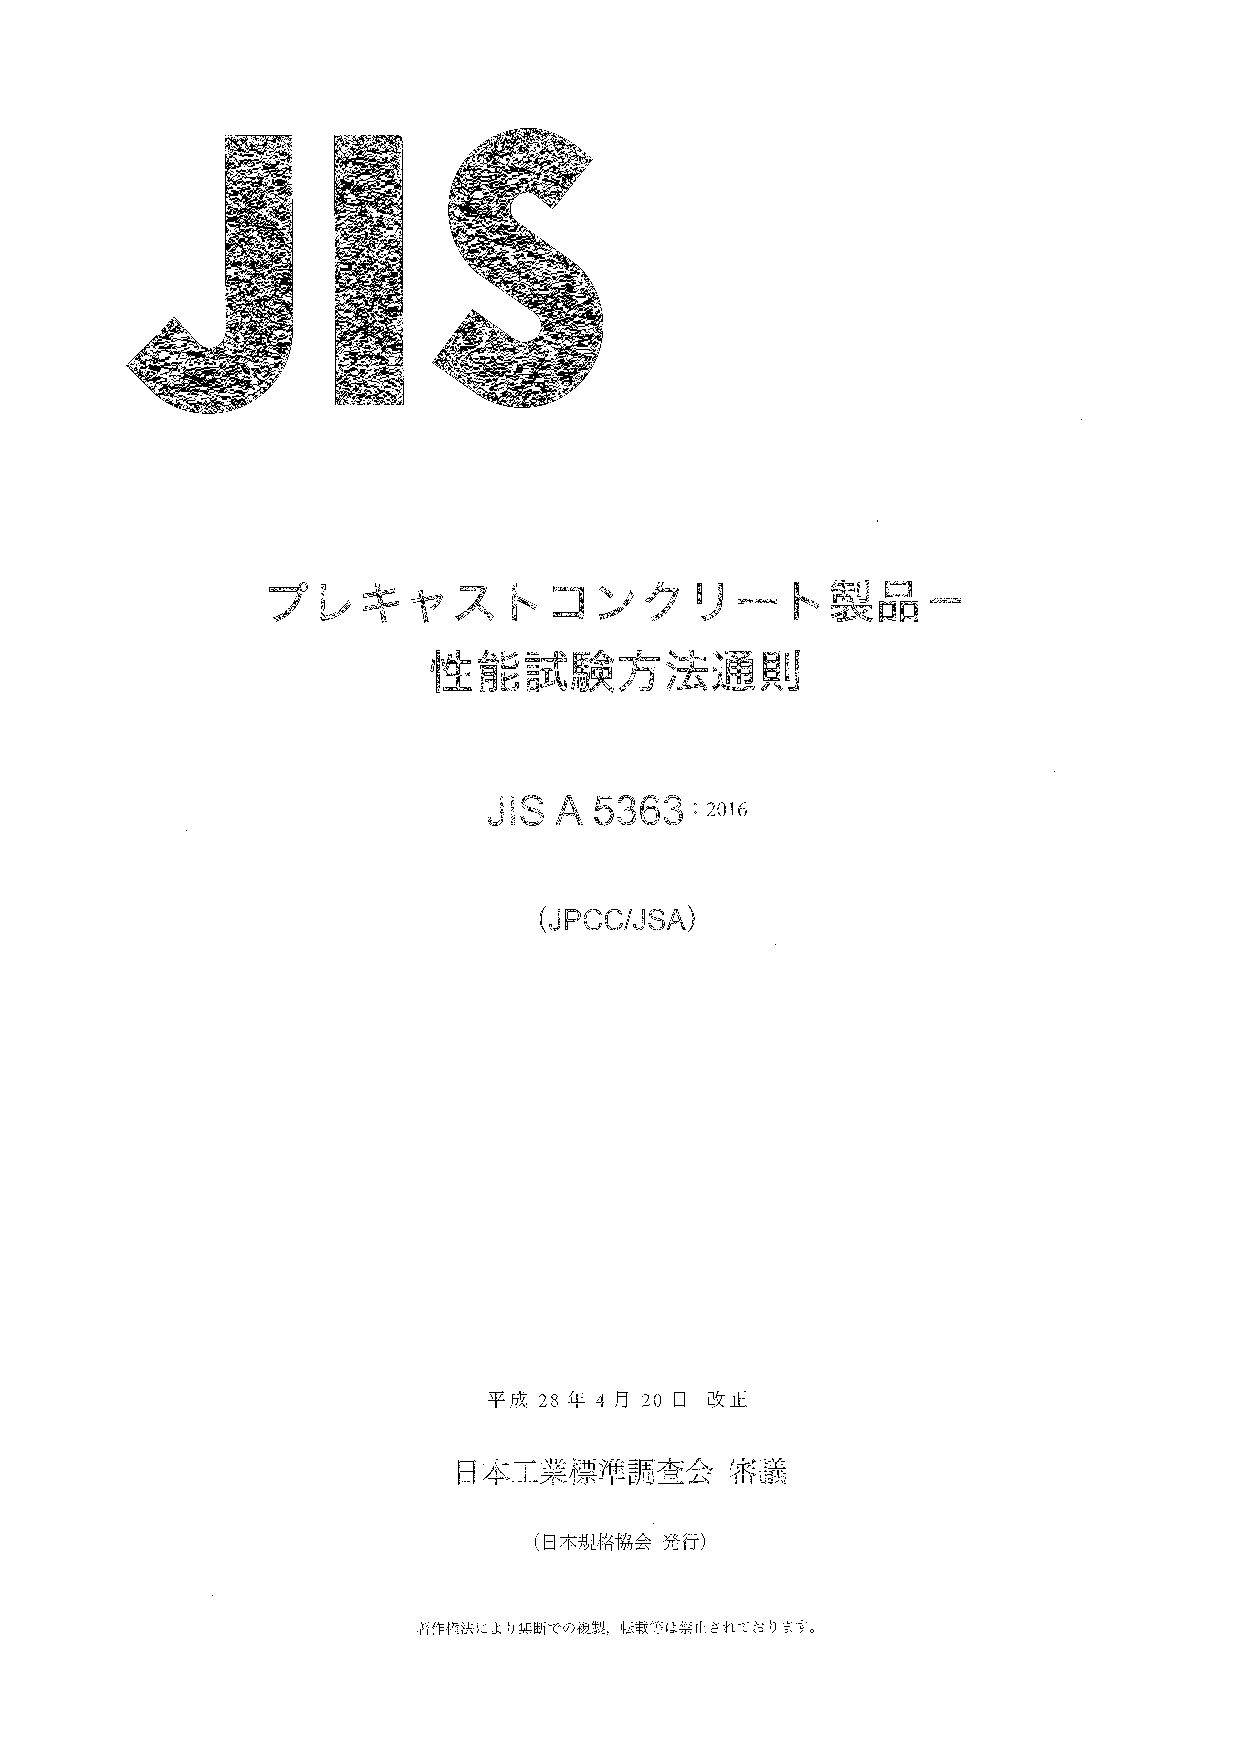 JIS A 5363:2016封面图